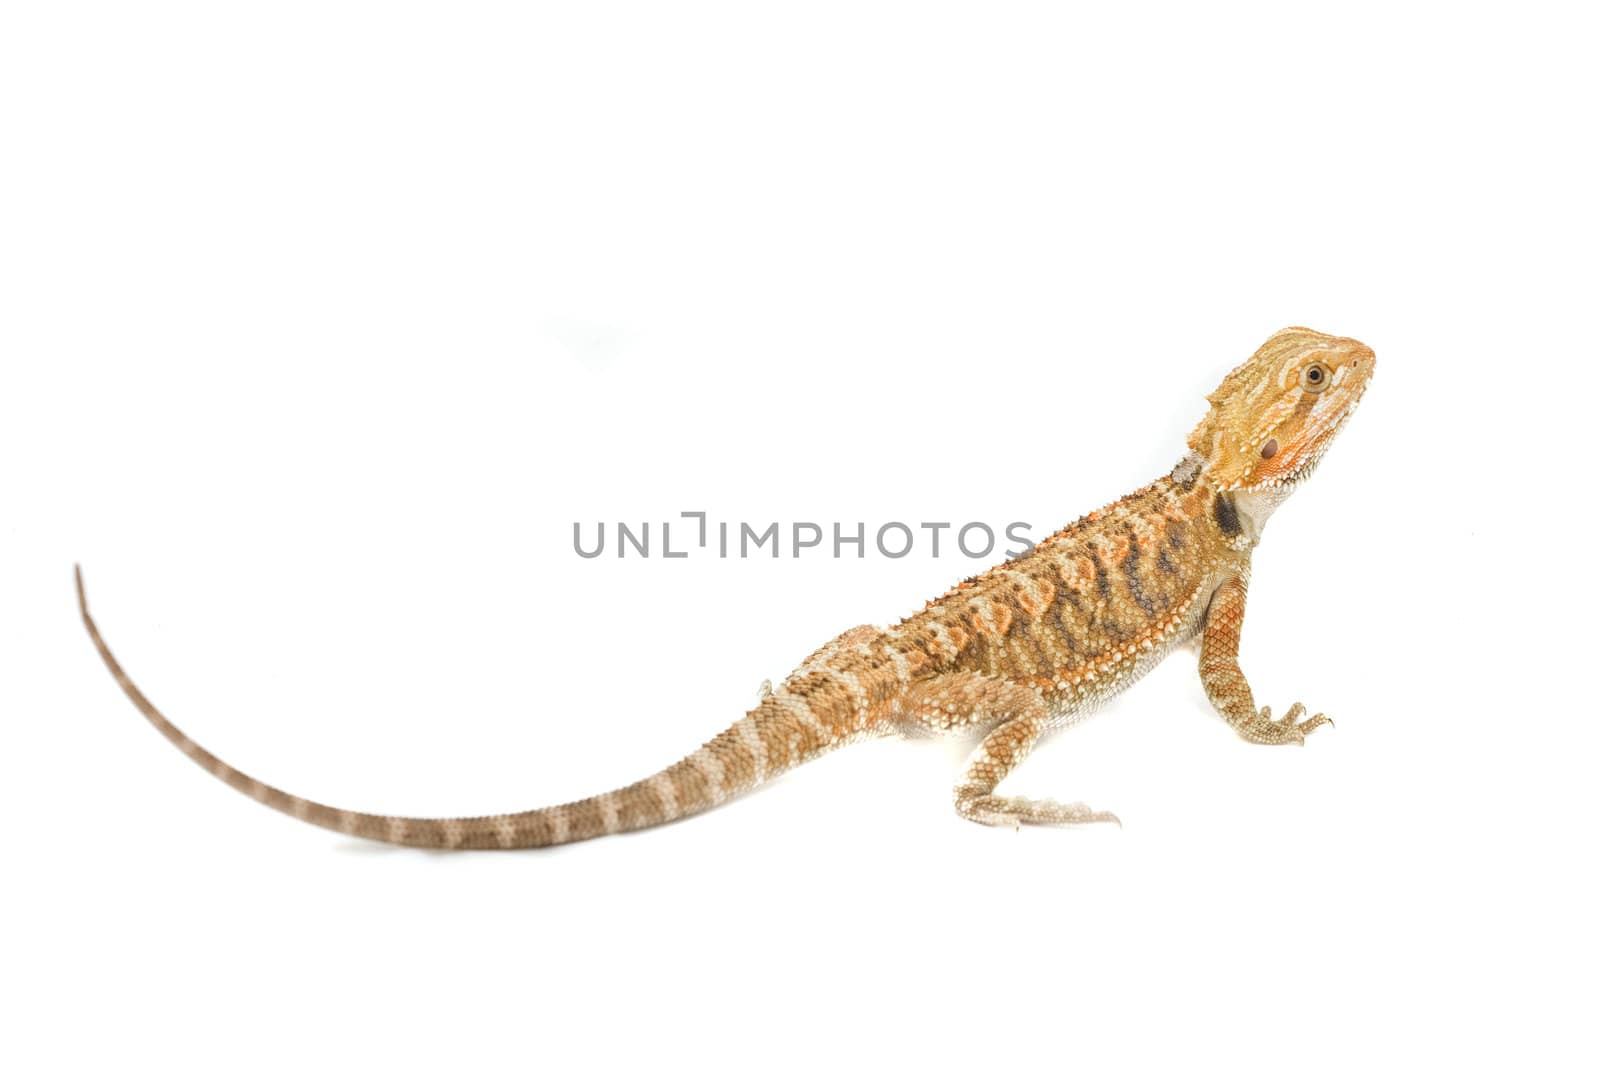 Juvenile Bearded Dragon Pet. (Pogona)